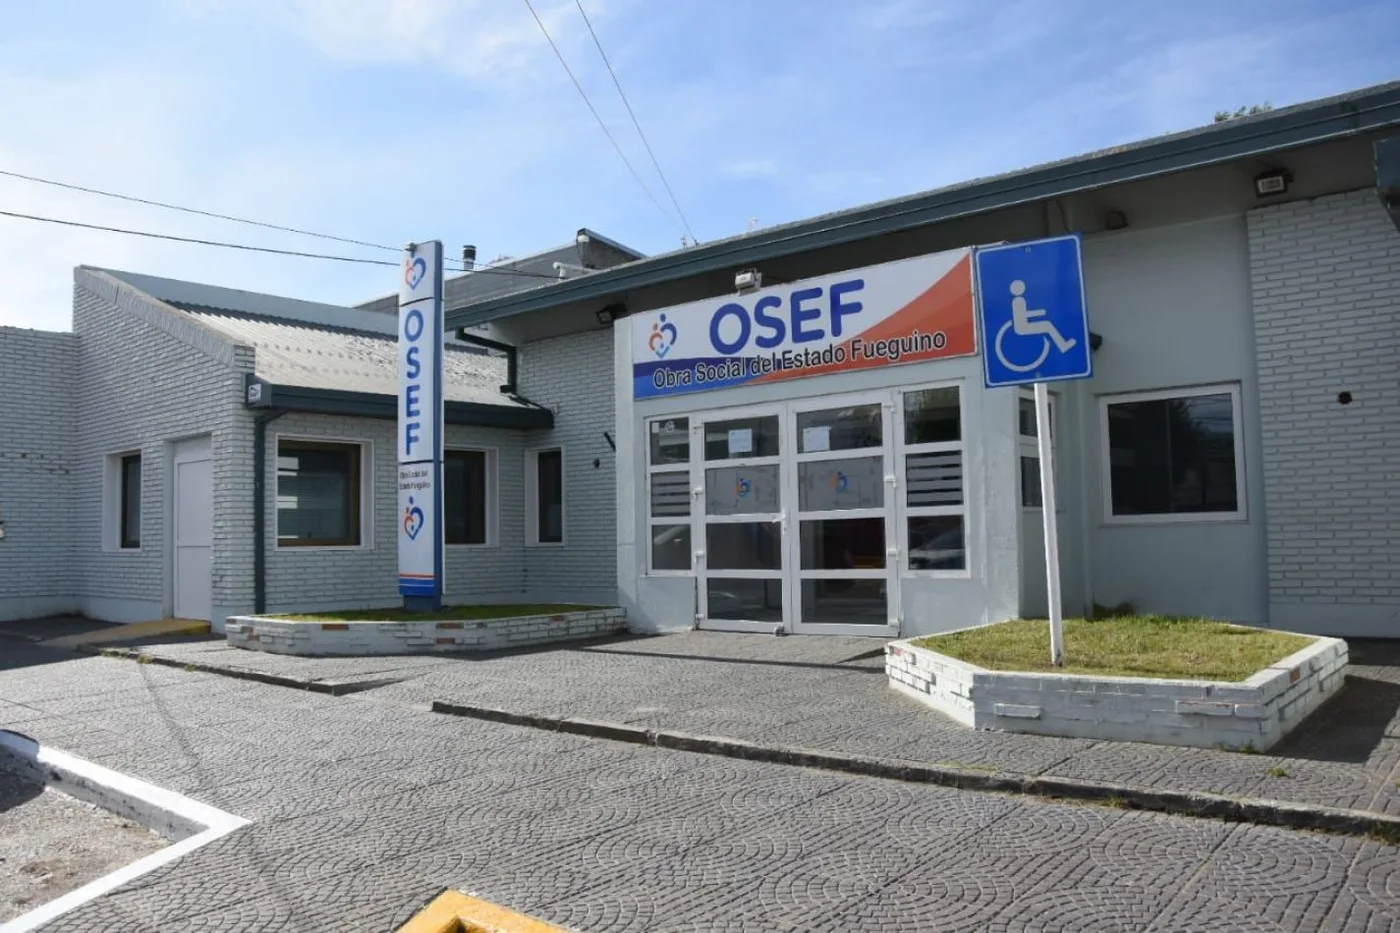 "Osef está regularizando deudas con las farmacias convenidas"